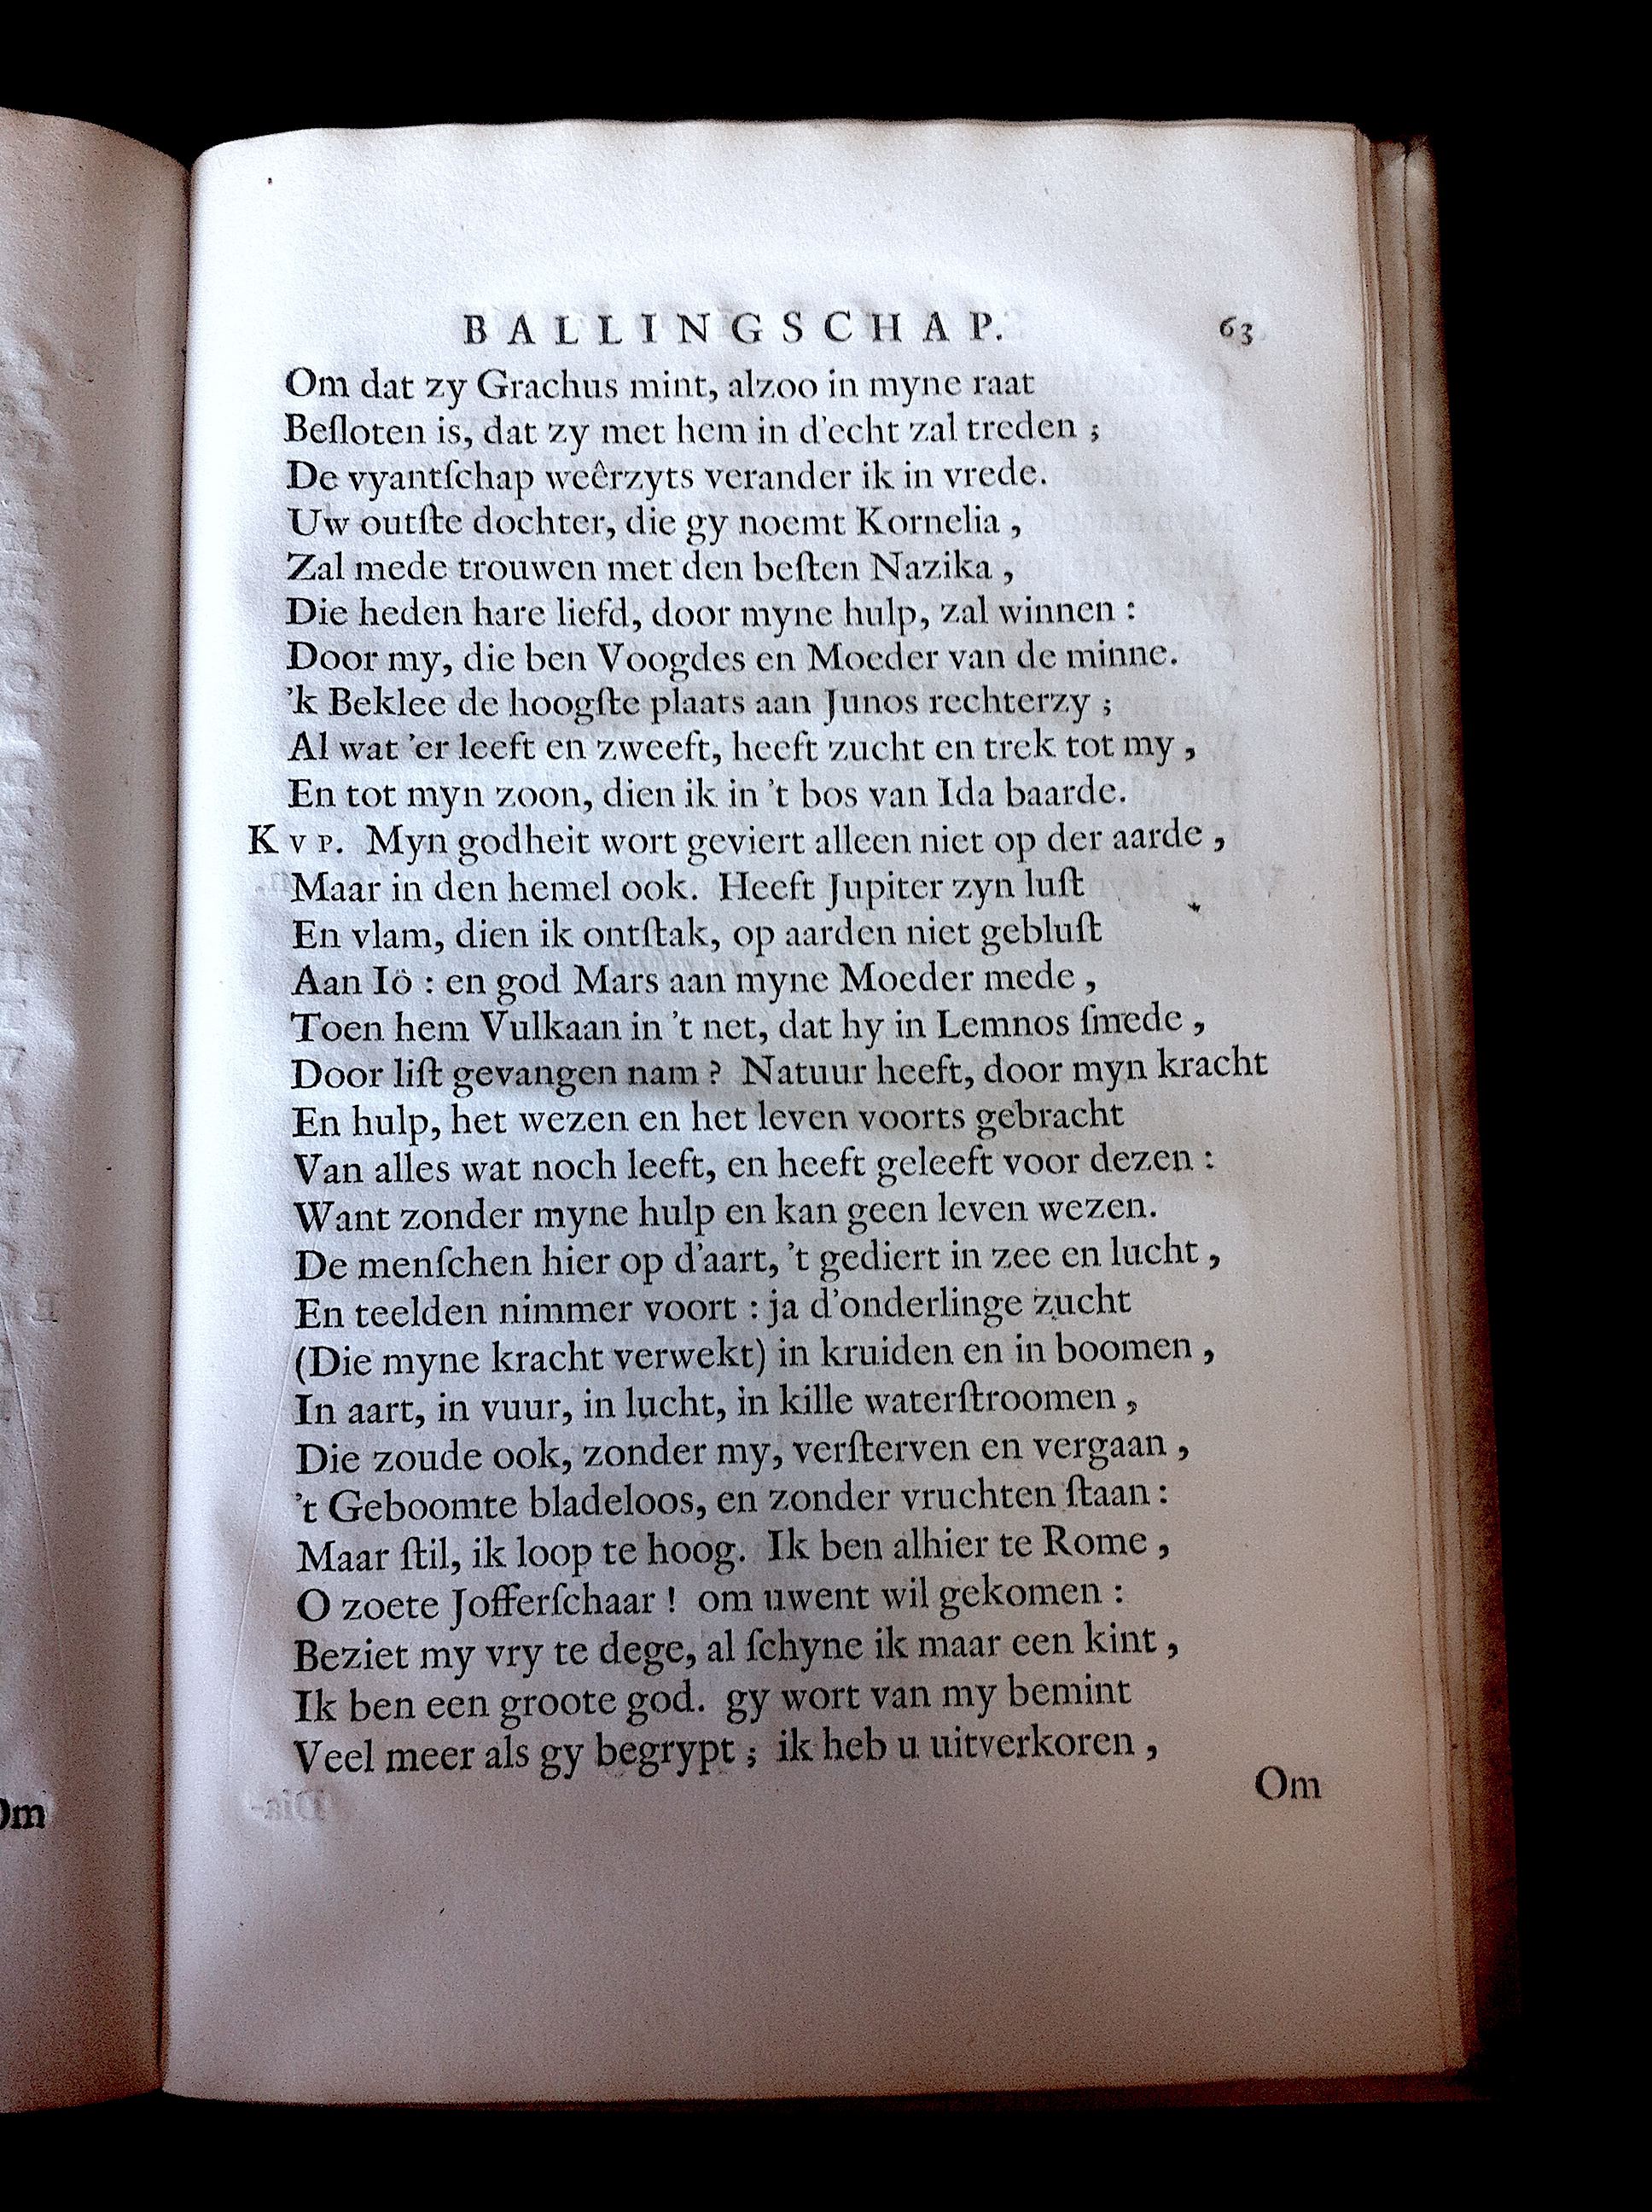 BoccardScipioFolio1658p63